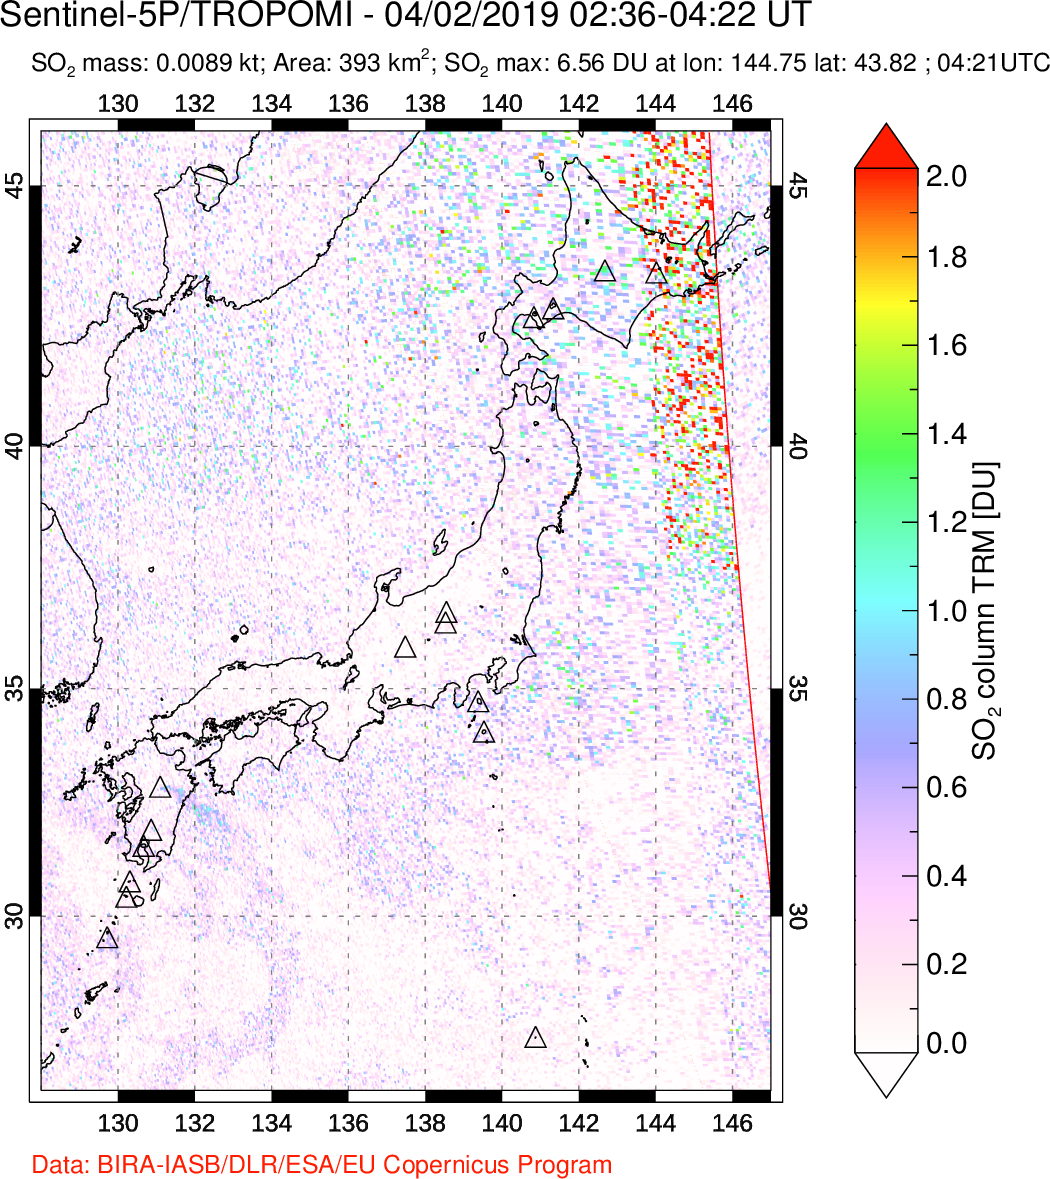 A sulfur dioxide image over Japan on Apr 02, 2019.